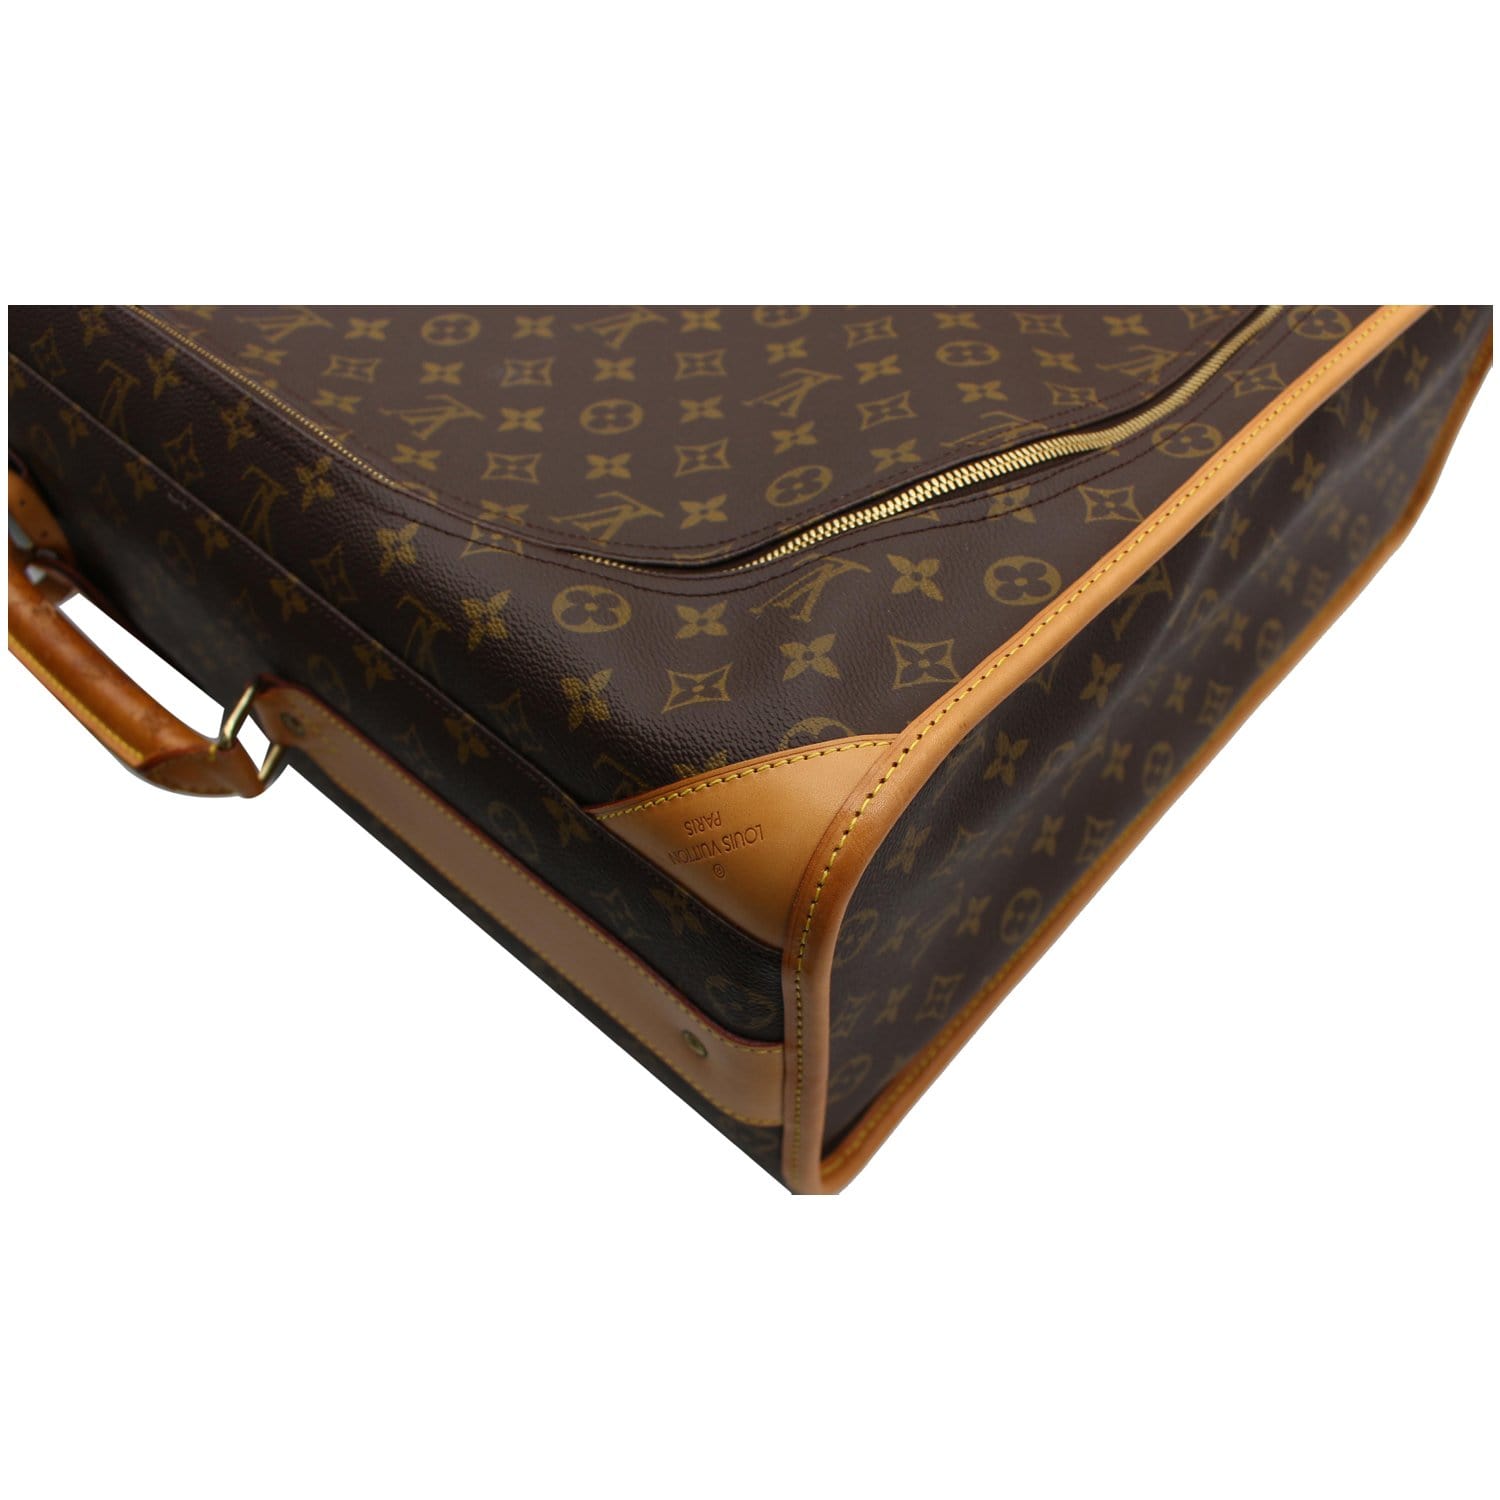 At Auction: Vintage Louis Vuitton Canvas Pullman Travel Suitcase